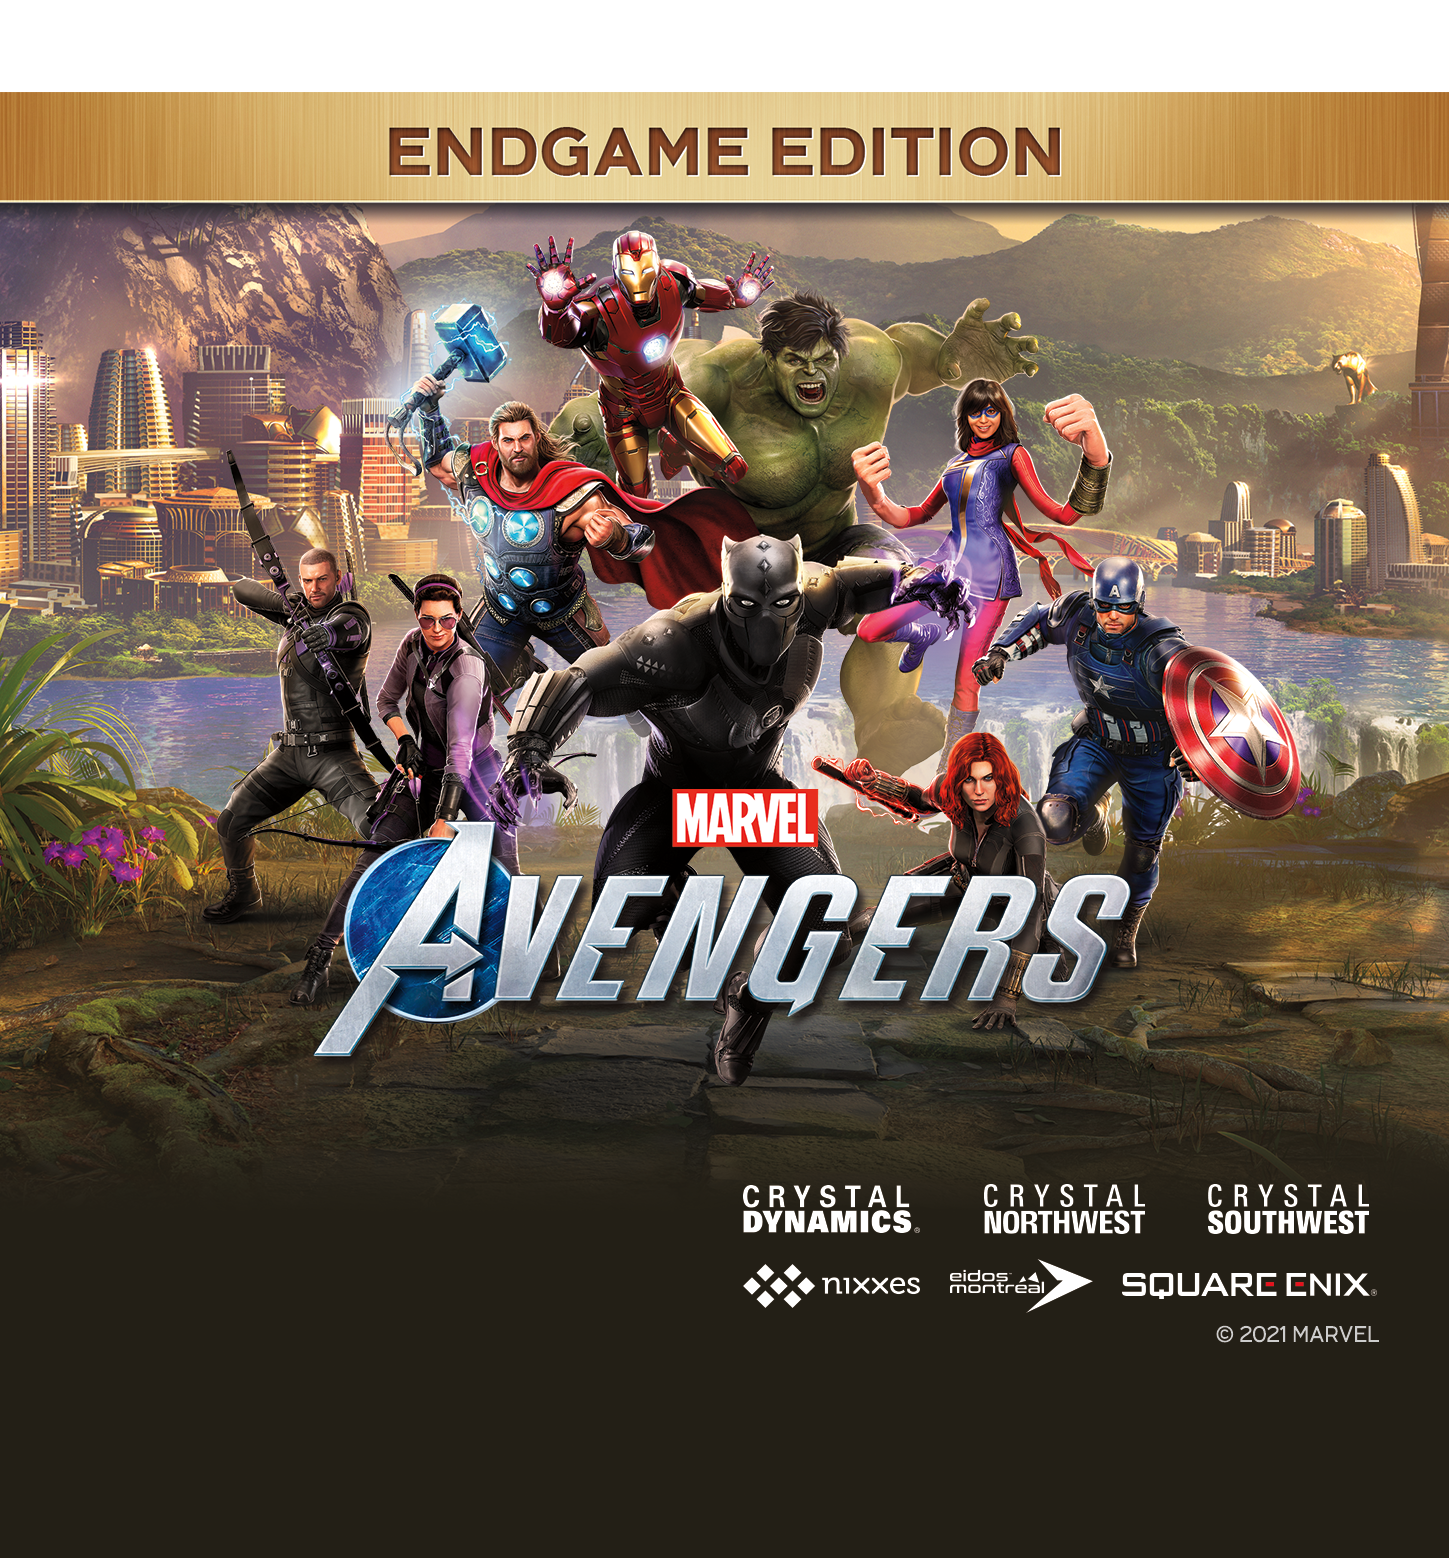 Avengers Endgame Final Team Wallpapers